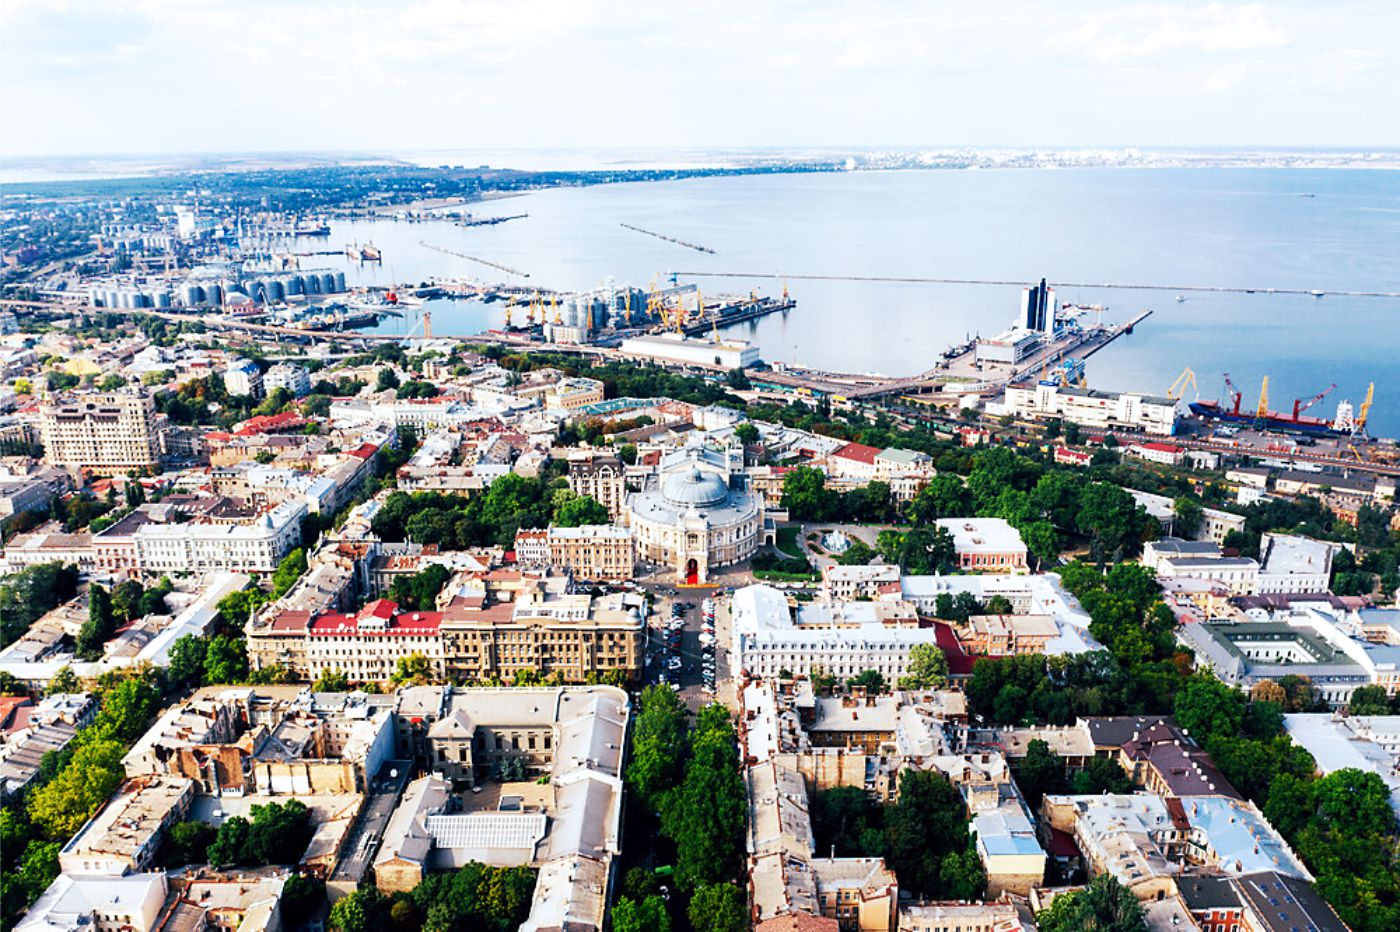 Cảng Odessa huyền thoại - Di sản Thế giới đang gặp nguy hiểm tại Ukraine - Ảnh 2.